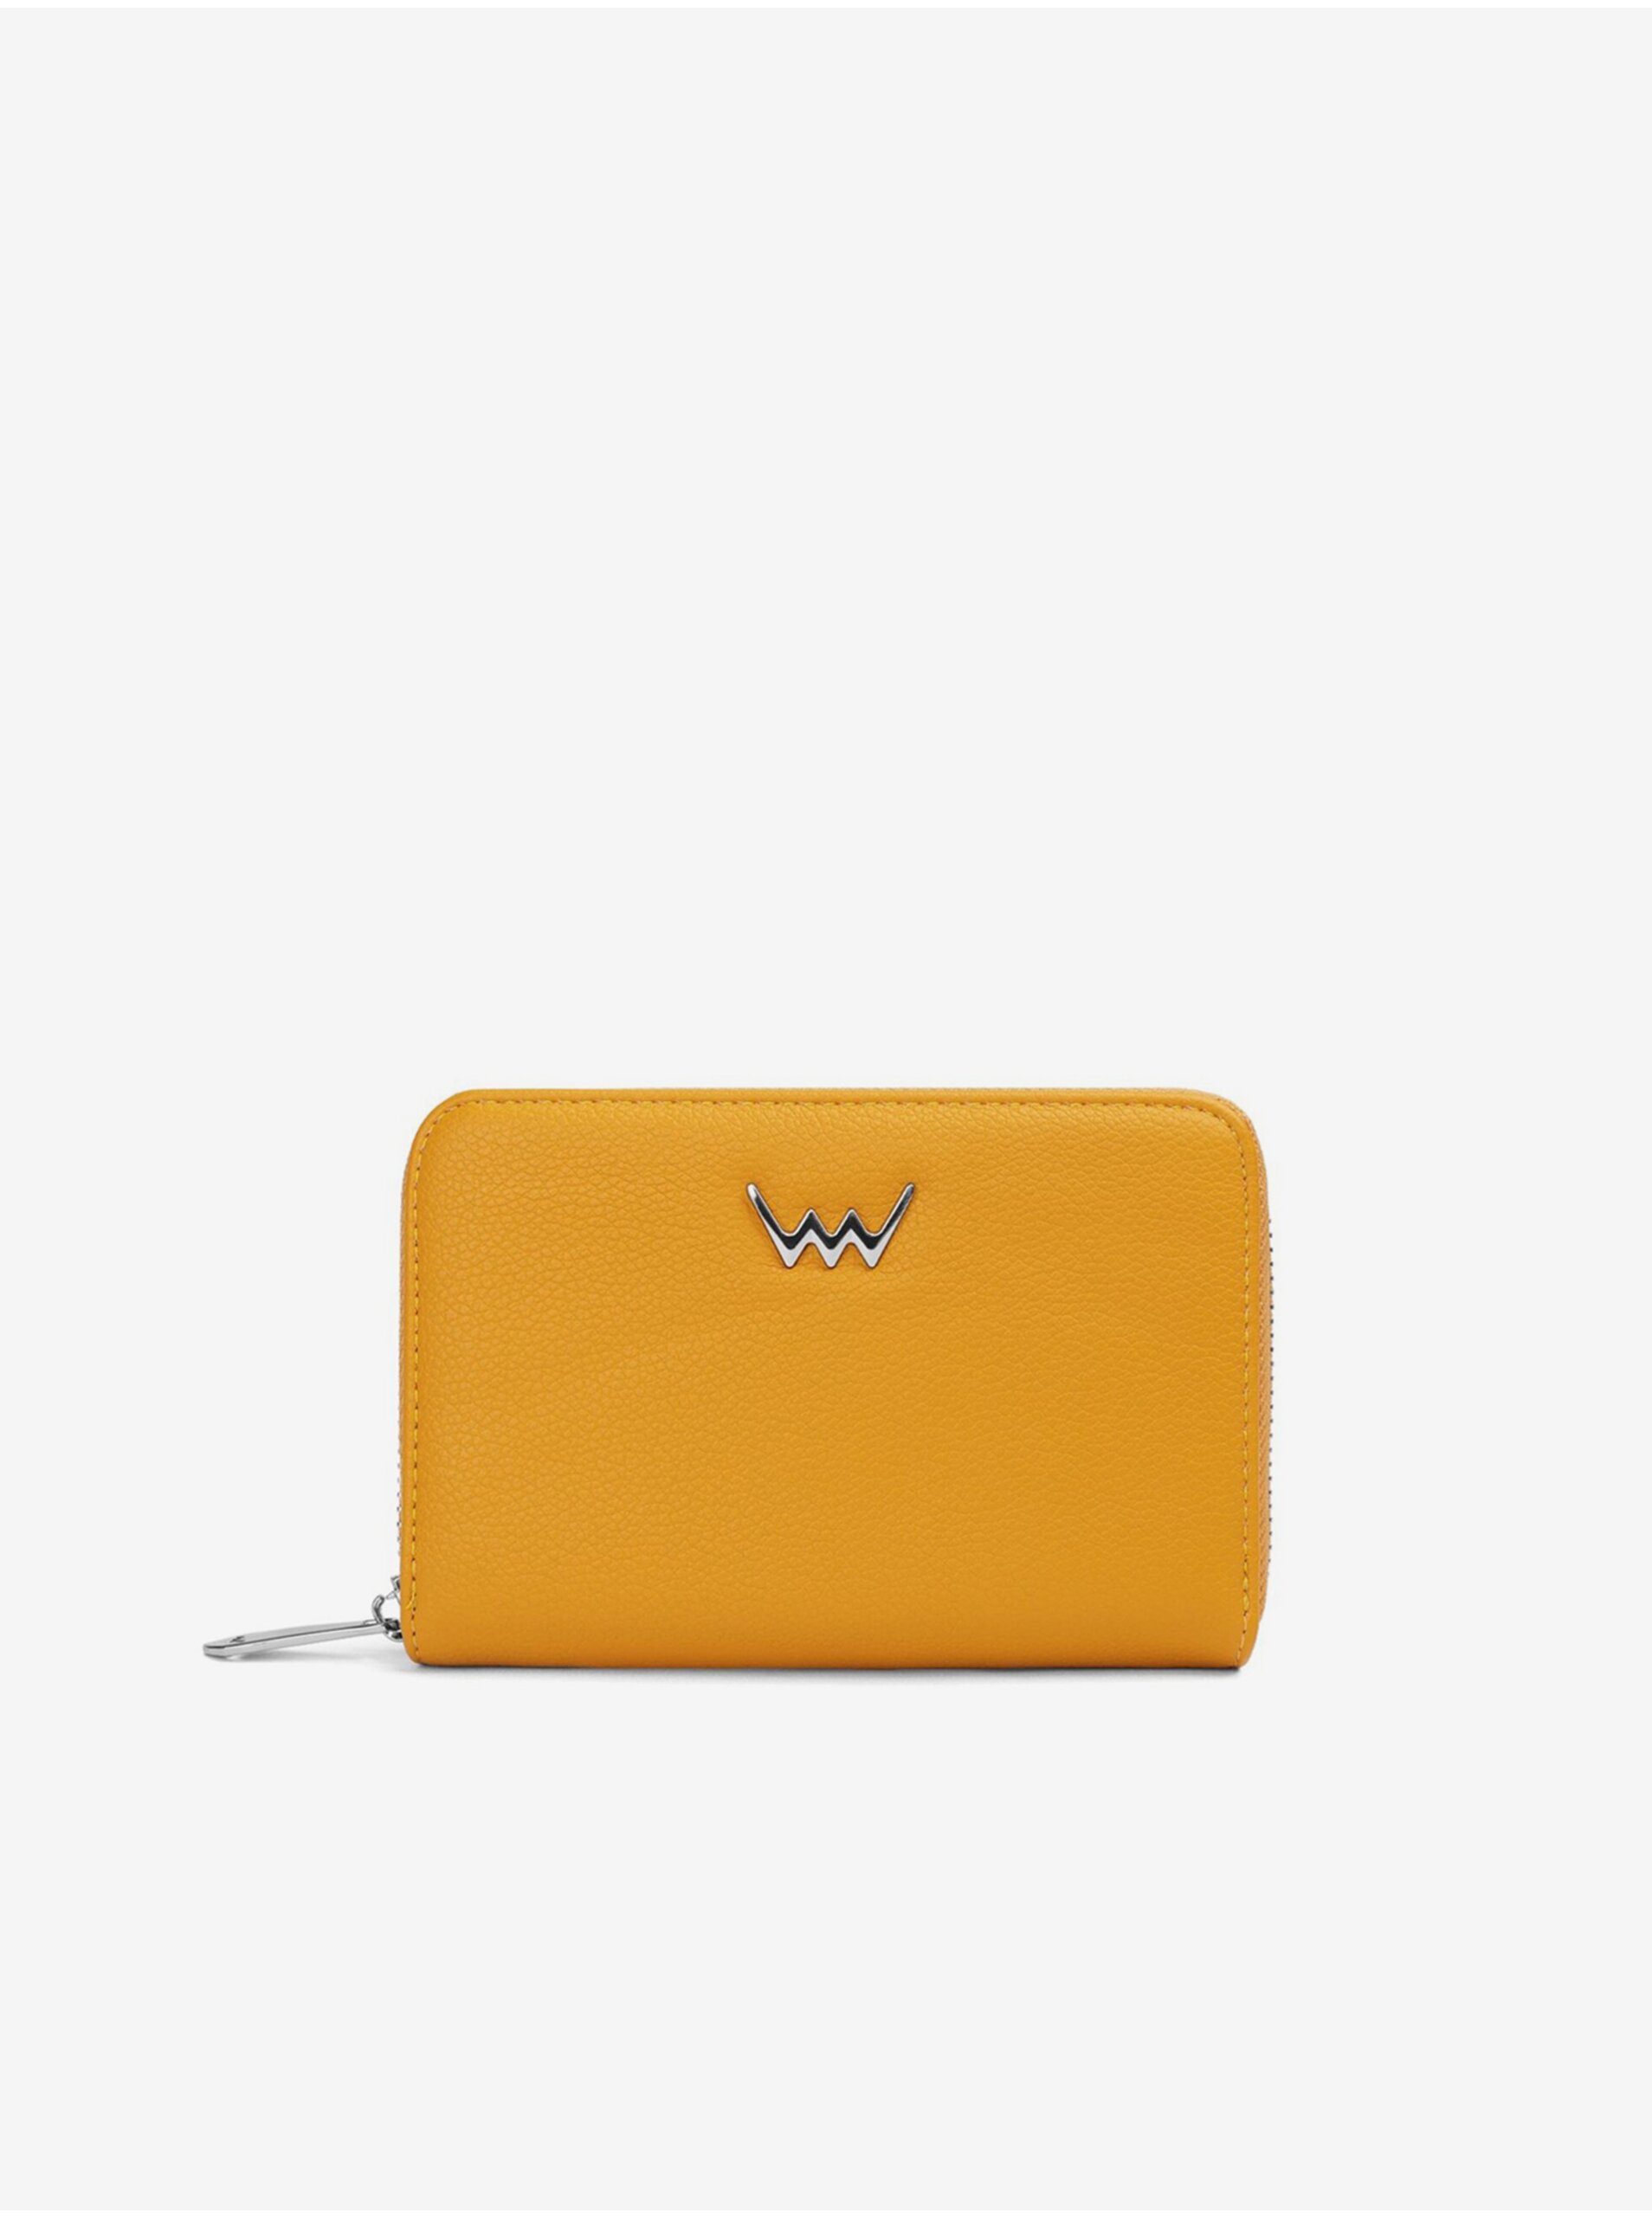 E-shop Horčicová dámska peňaženka VUCH Magnus Yellow